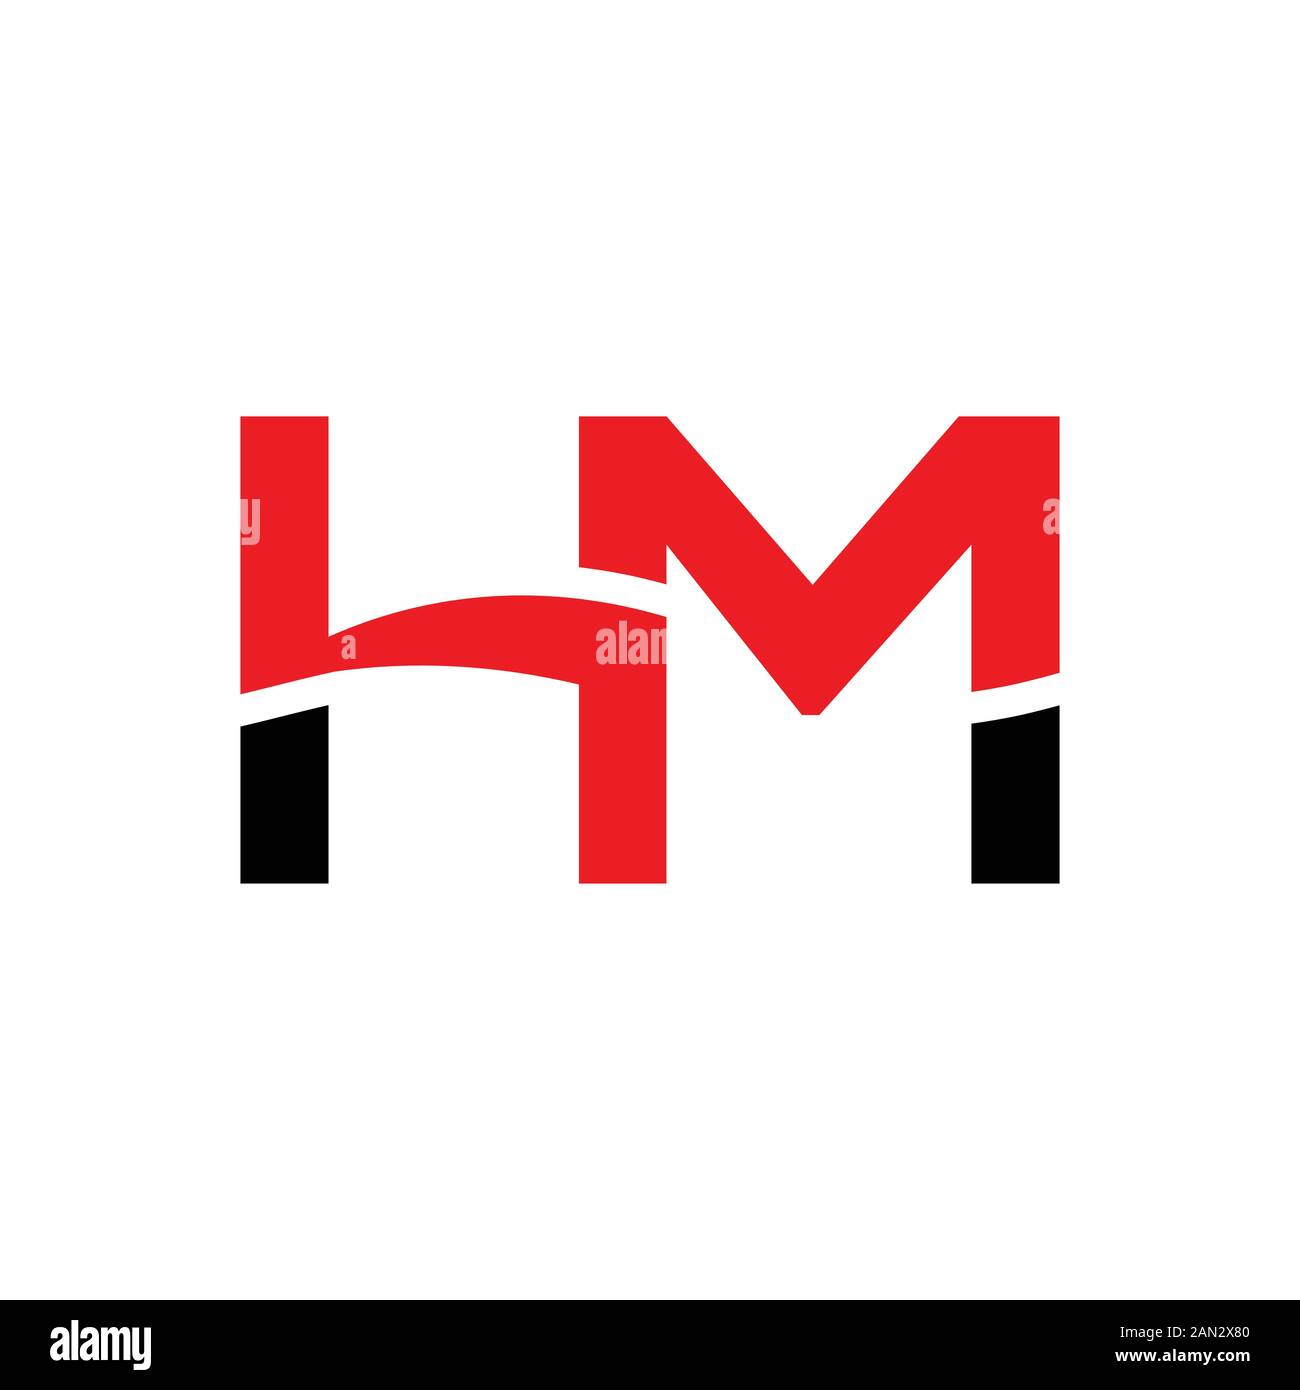 Hm logo Banque de photographies et d'images à haute résolution - Alamy